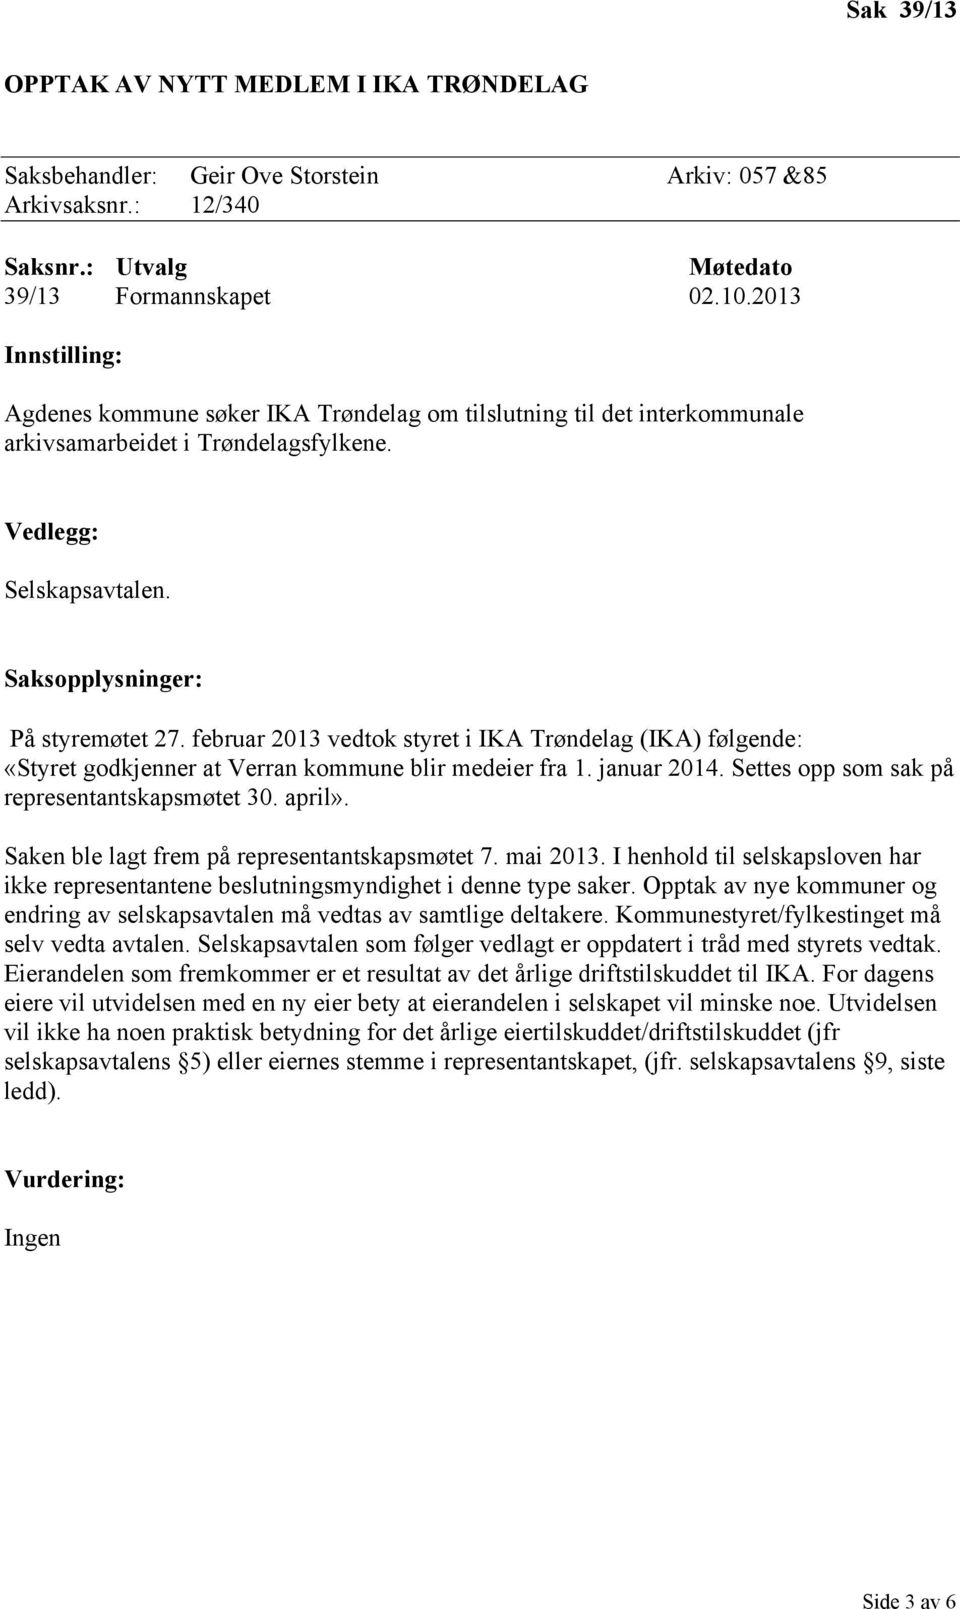 februar 2013 vedtok styret i IKA Trøndelag (IKA) følgende: «Styret godkjenner at Verran kommune blir medeier fra 1. januar 2014. Settes opp som sak på representantskapsmøtet 30. april».